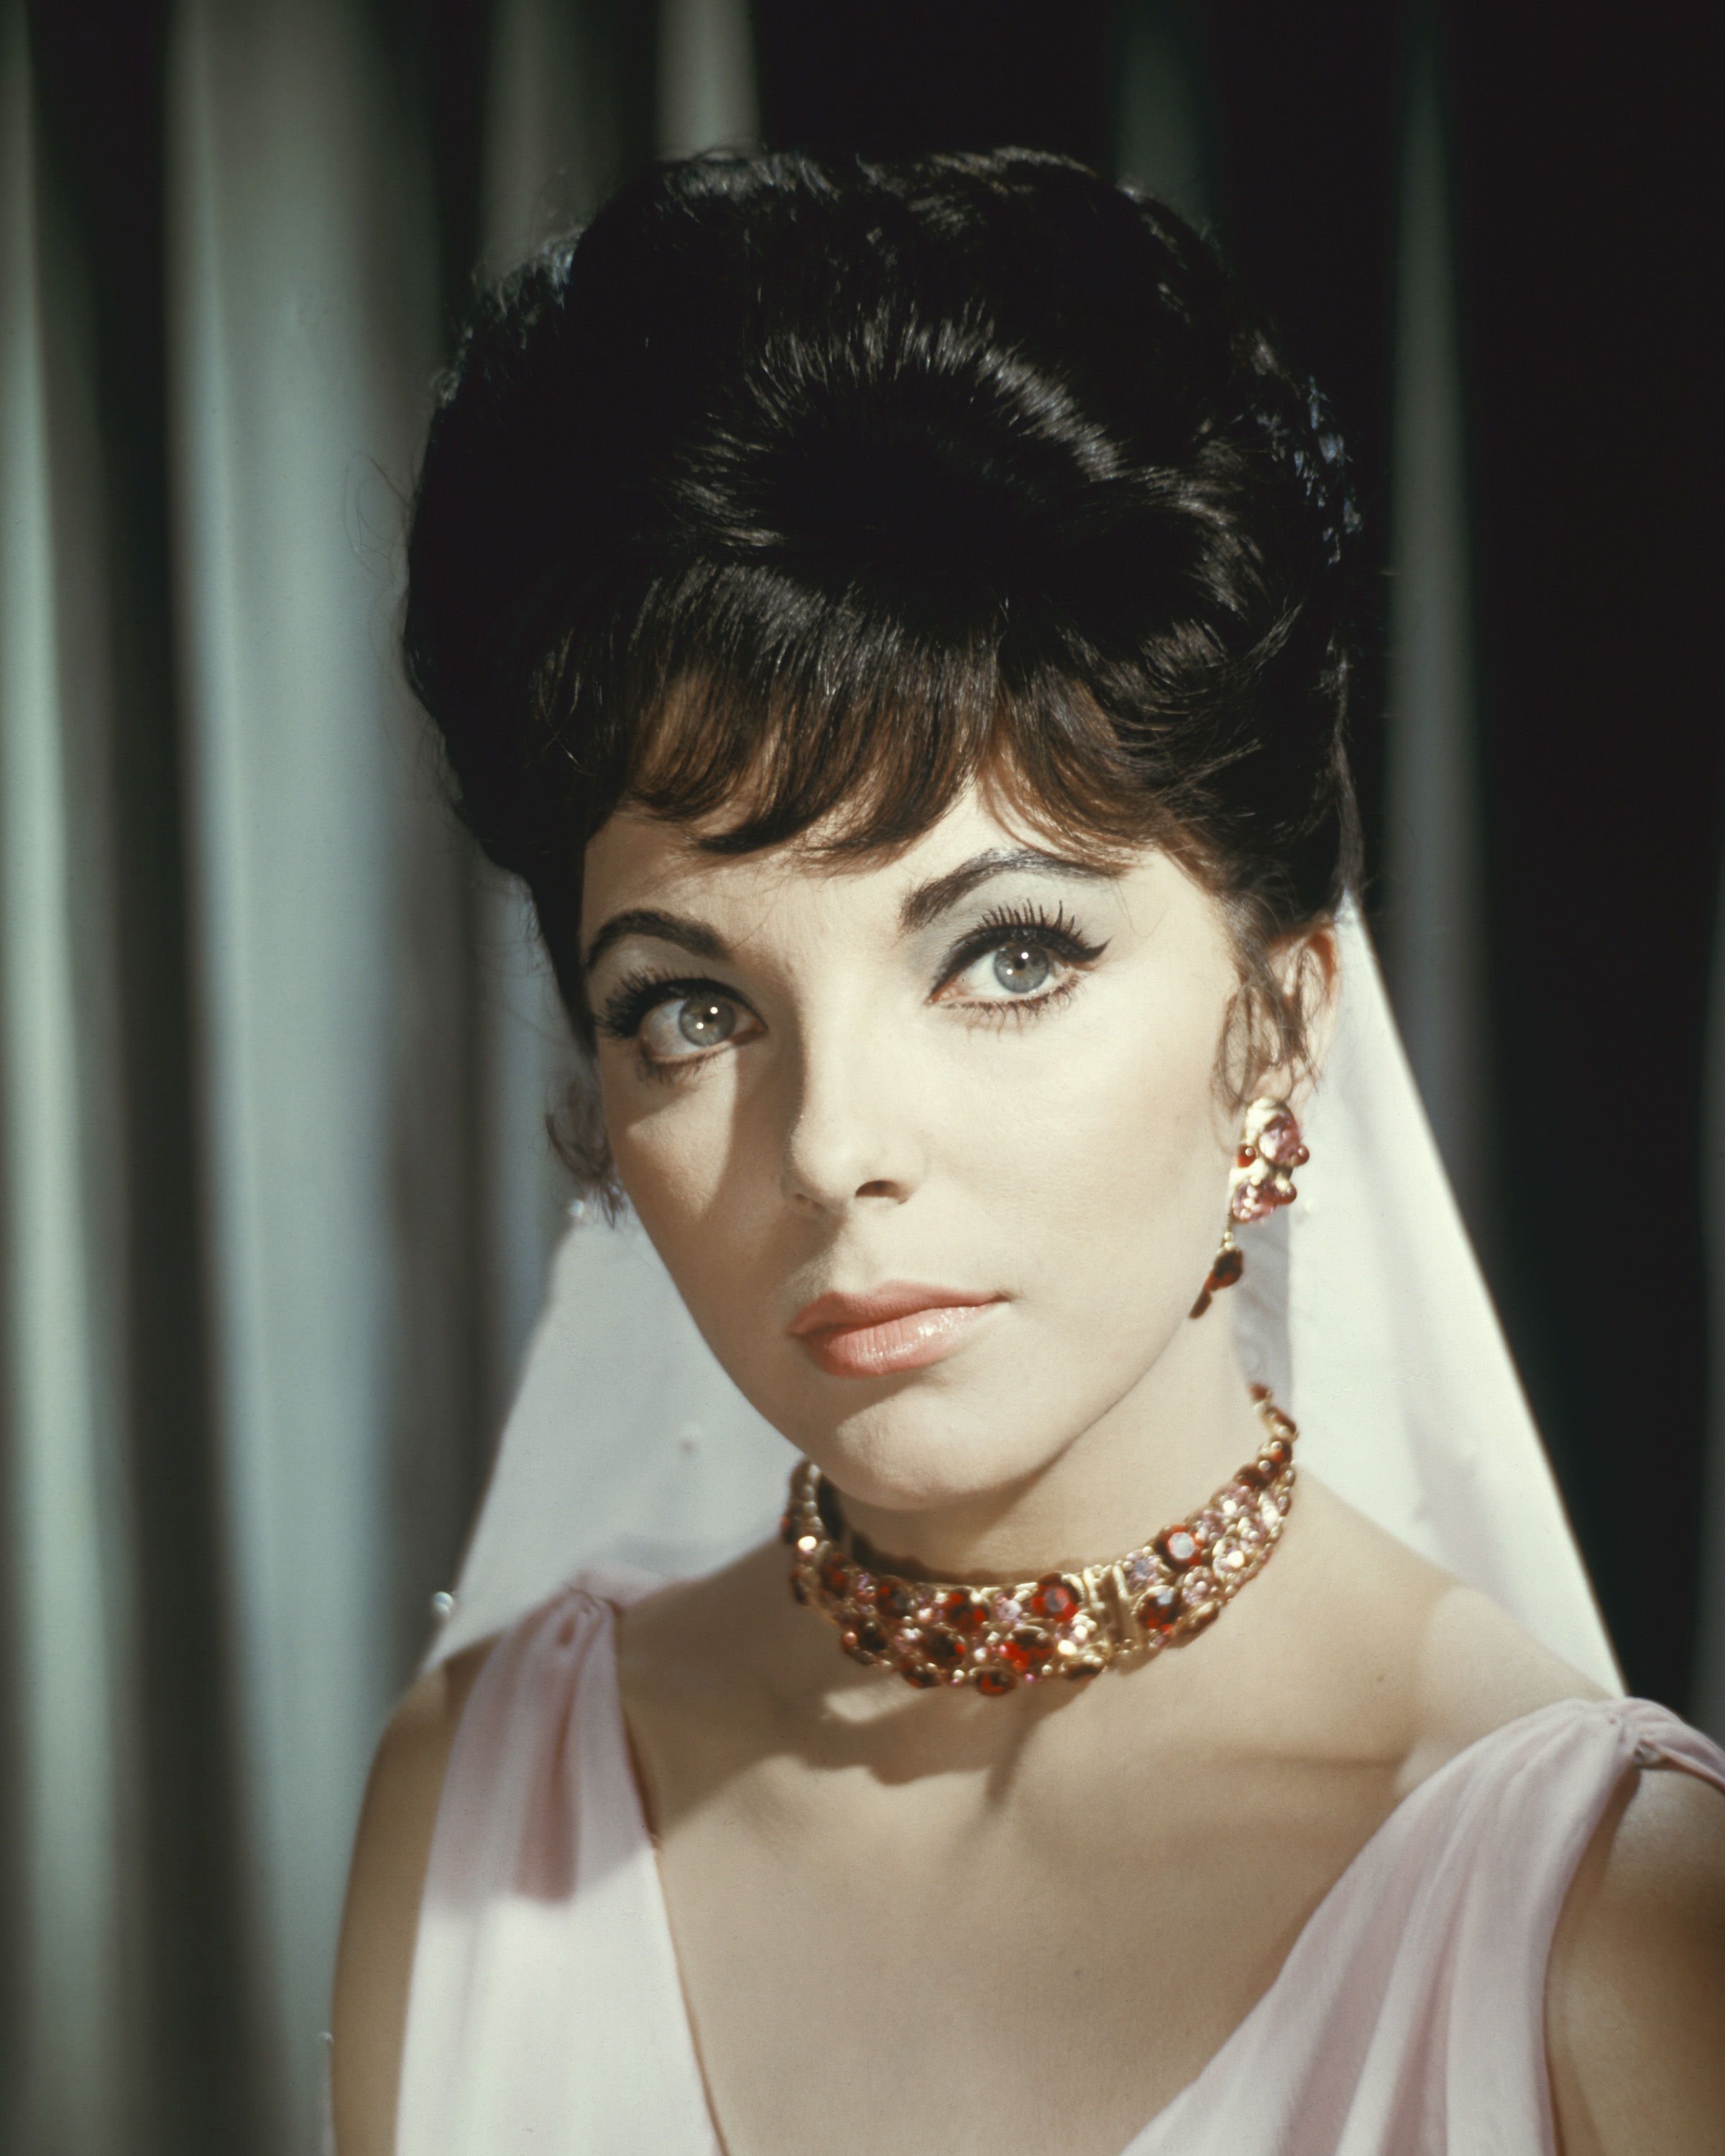 Joan Collins am Set von "Esther und der König", 1960 | Quellen: Getty Images